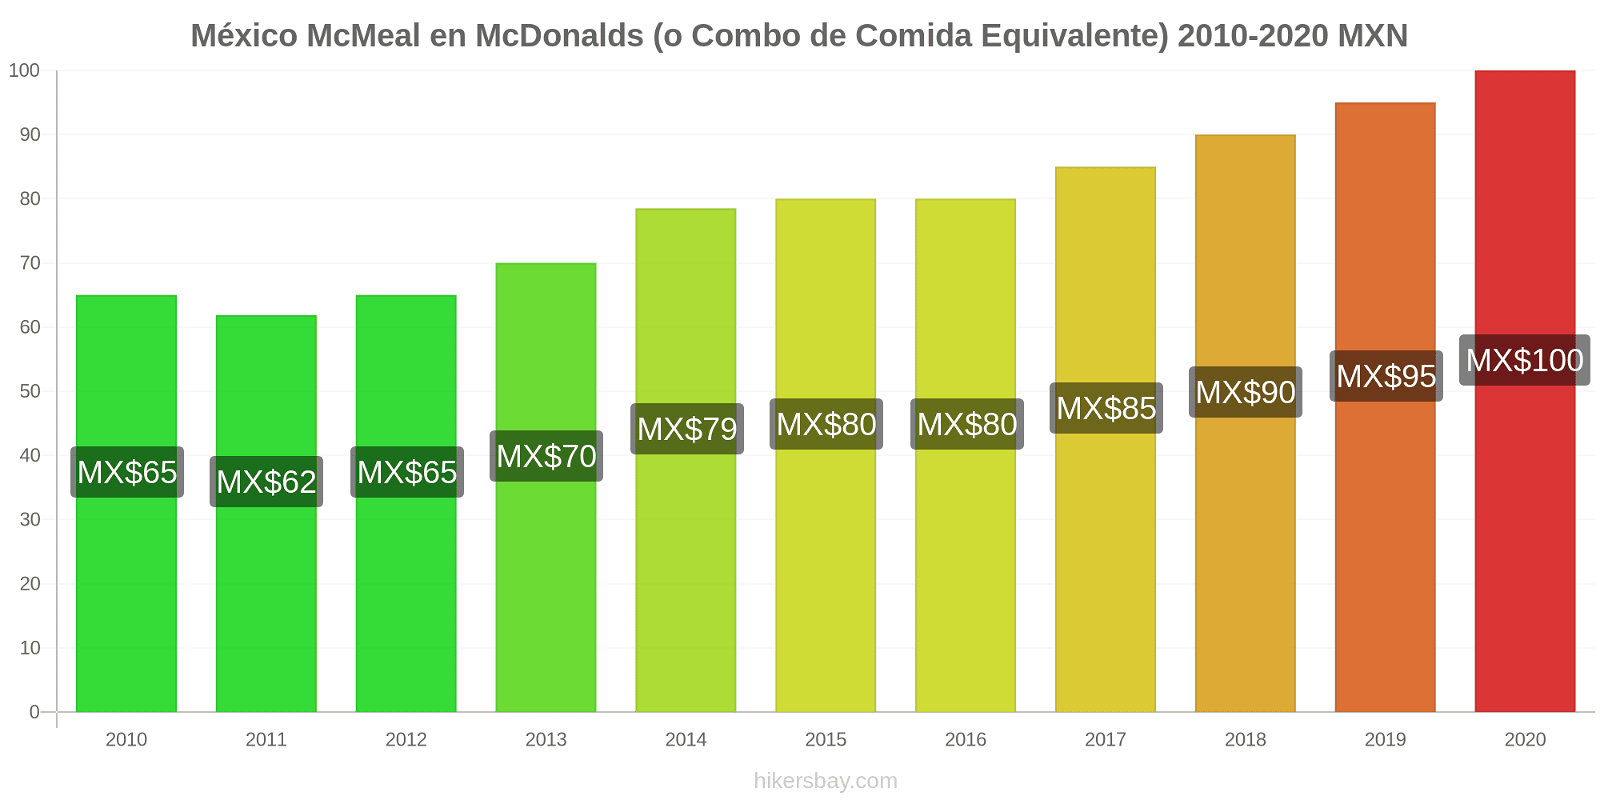 México cambios de precios McMeal en McDonalds (o menú equivalente) hikersbay.com